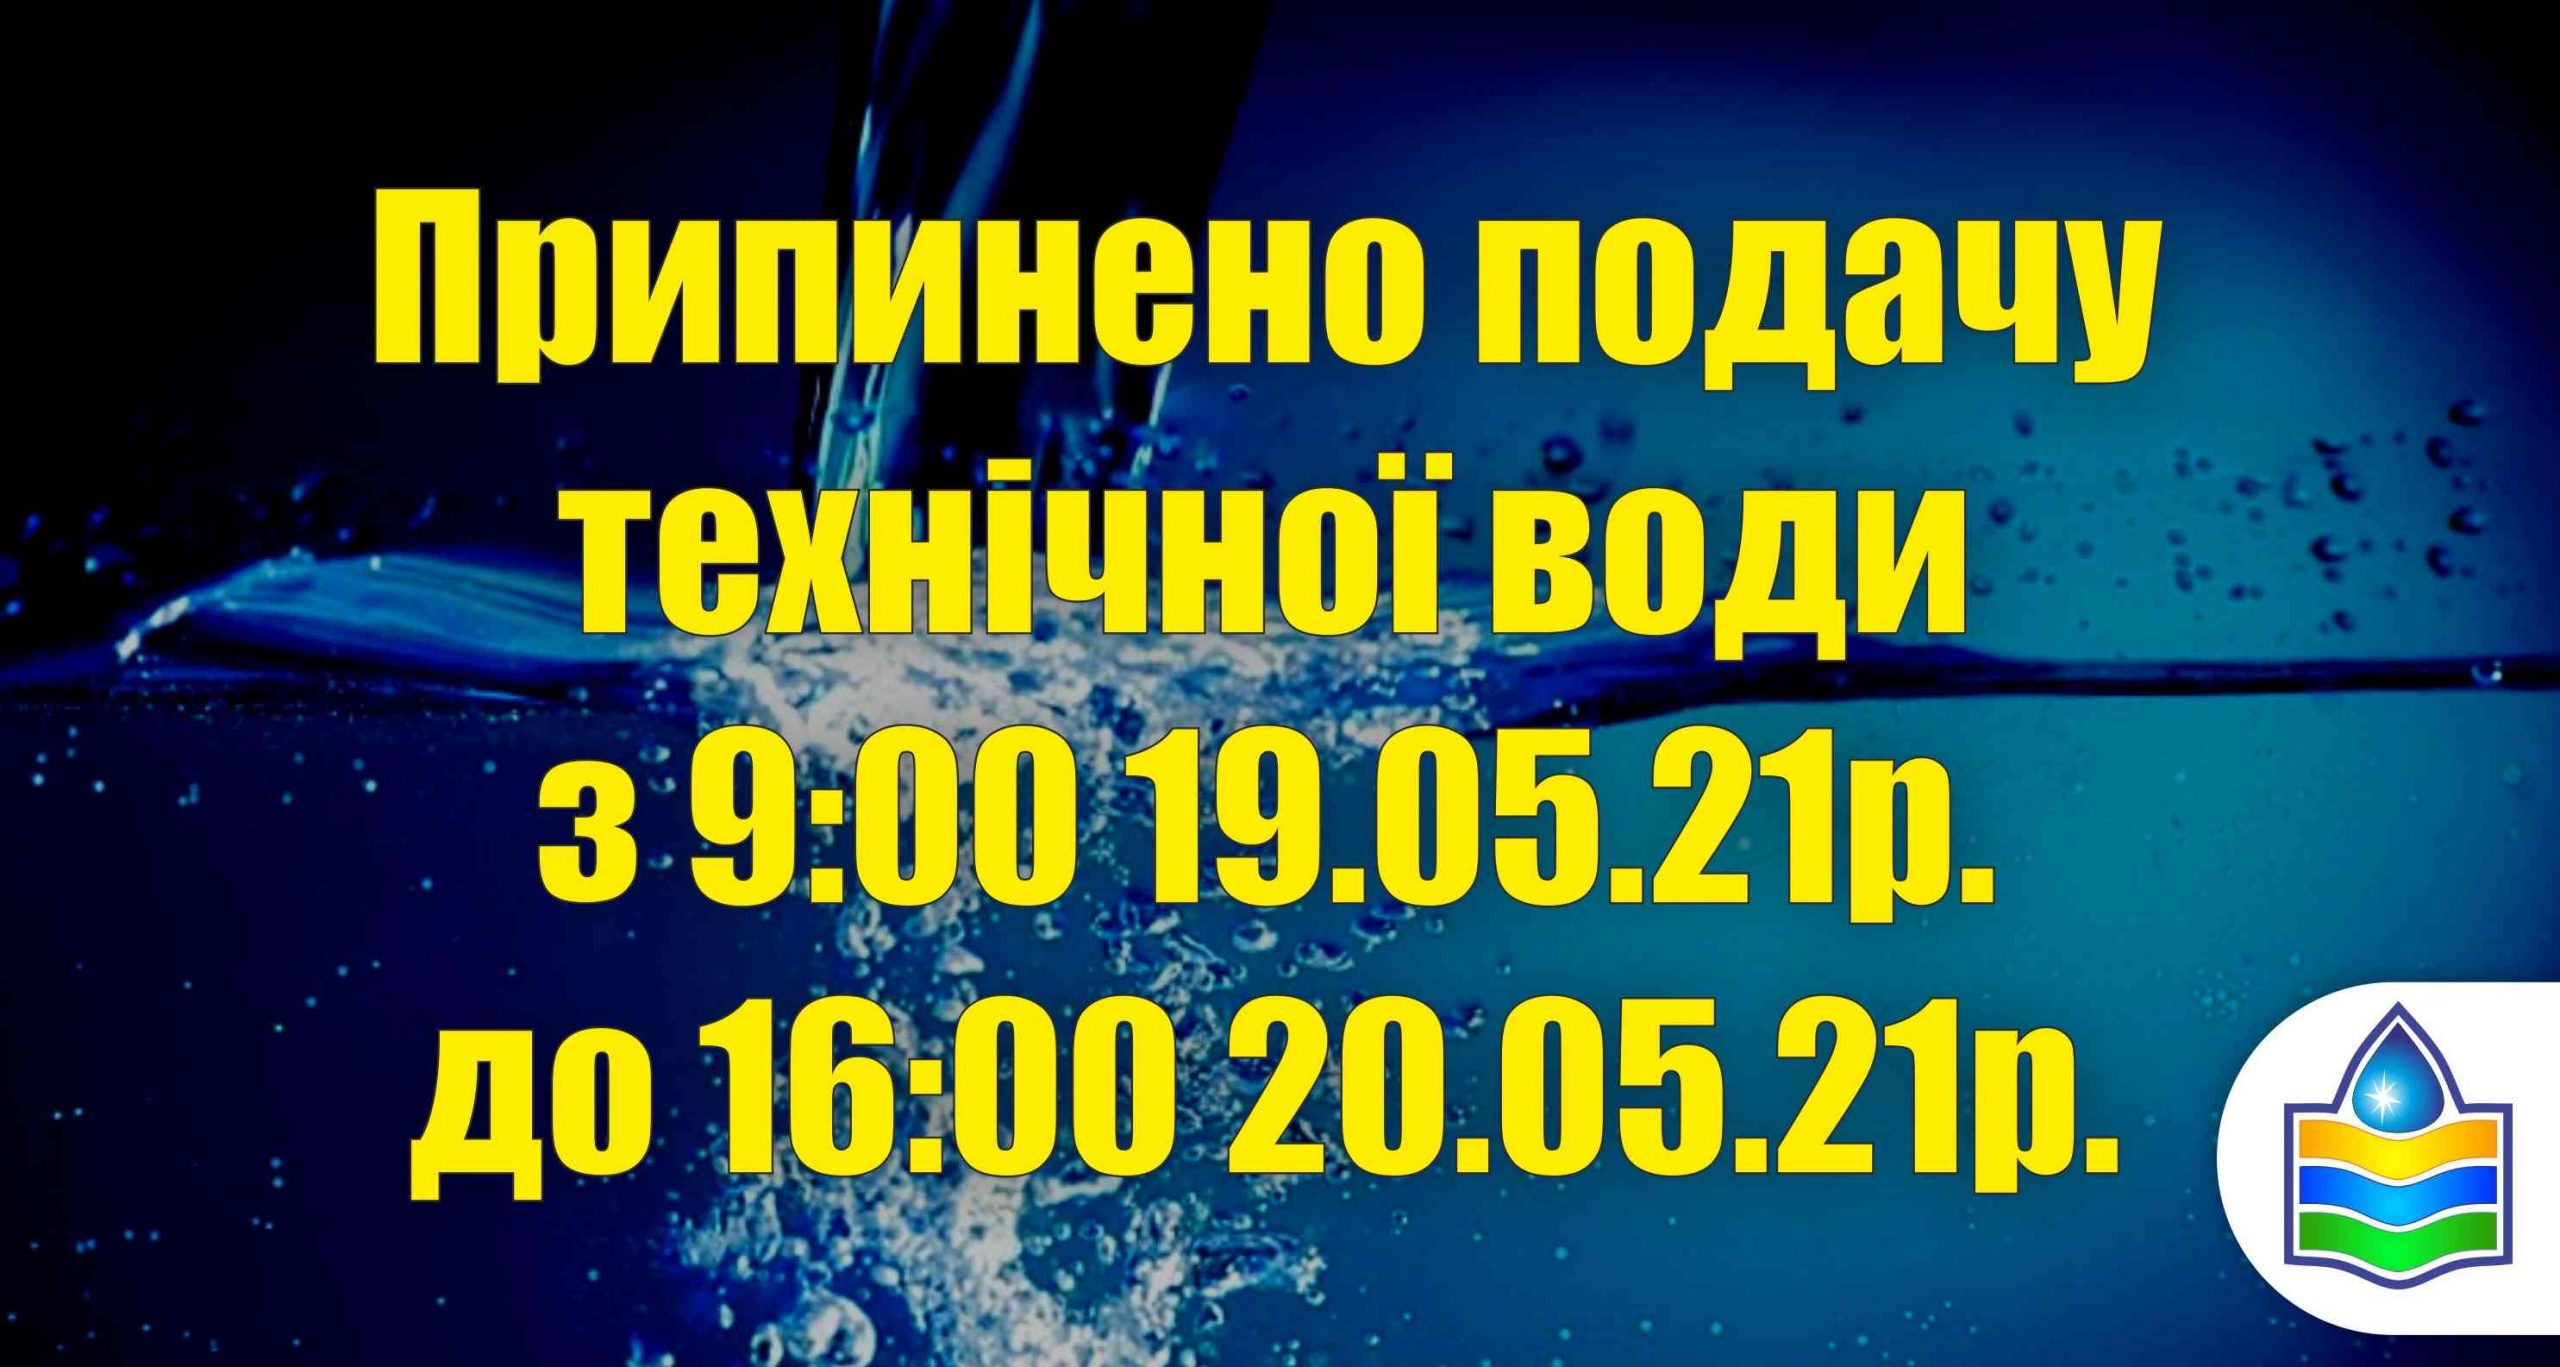 Припинено подачу технічної води з 9:00 19.05.21р. до 16:00 20.05.21р.